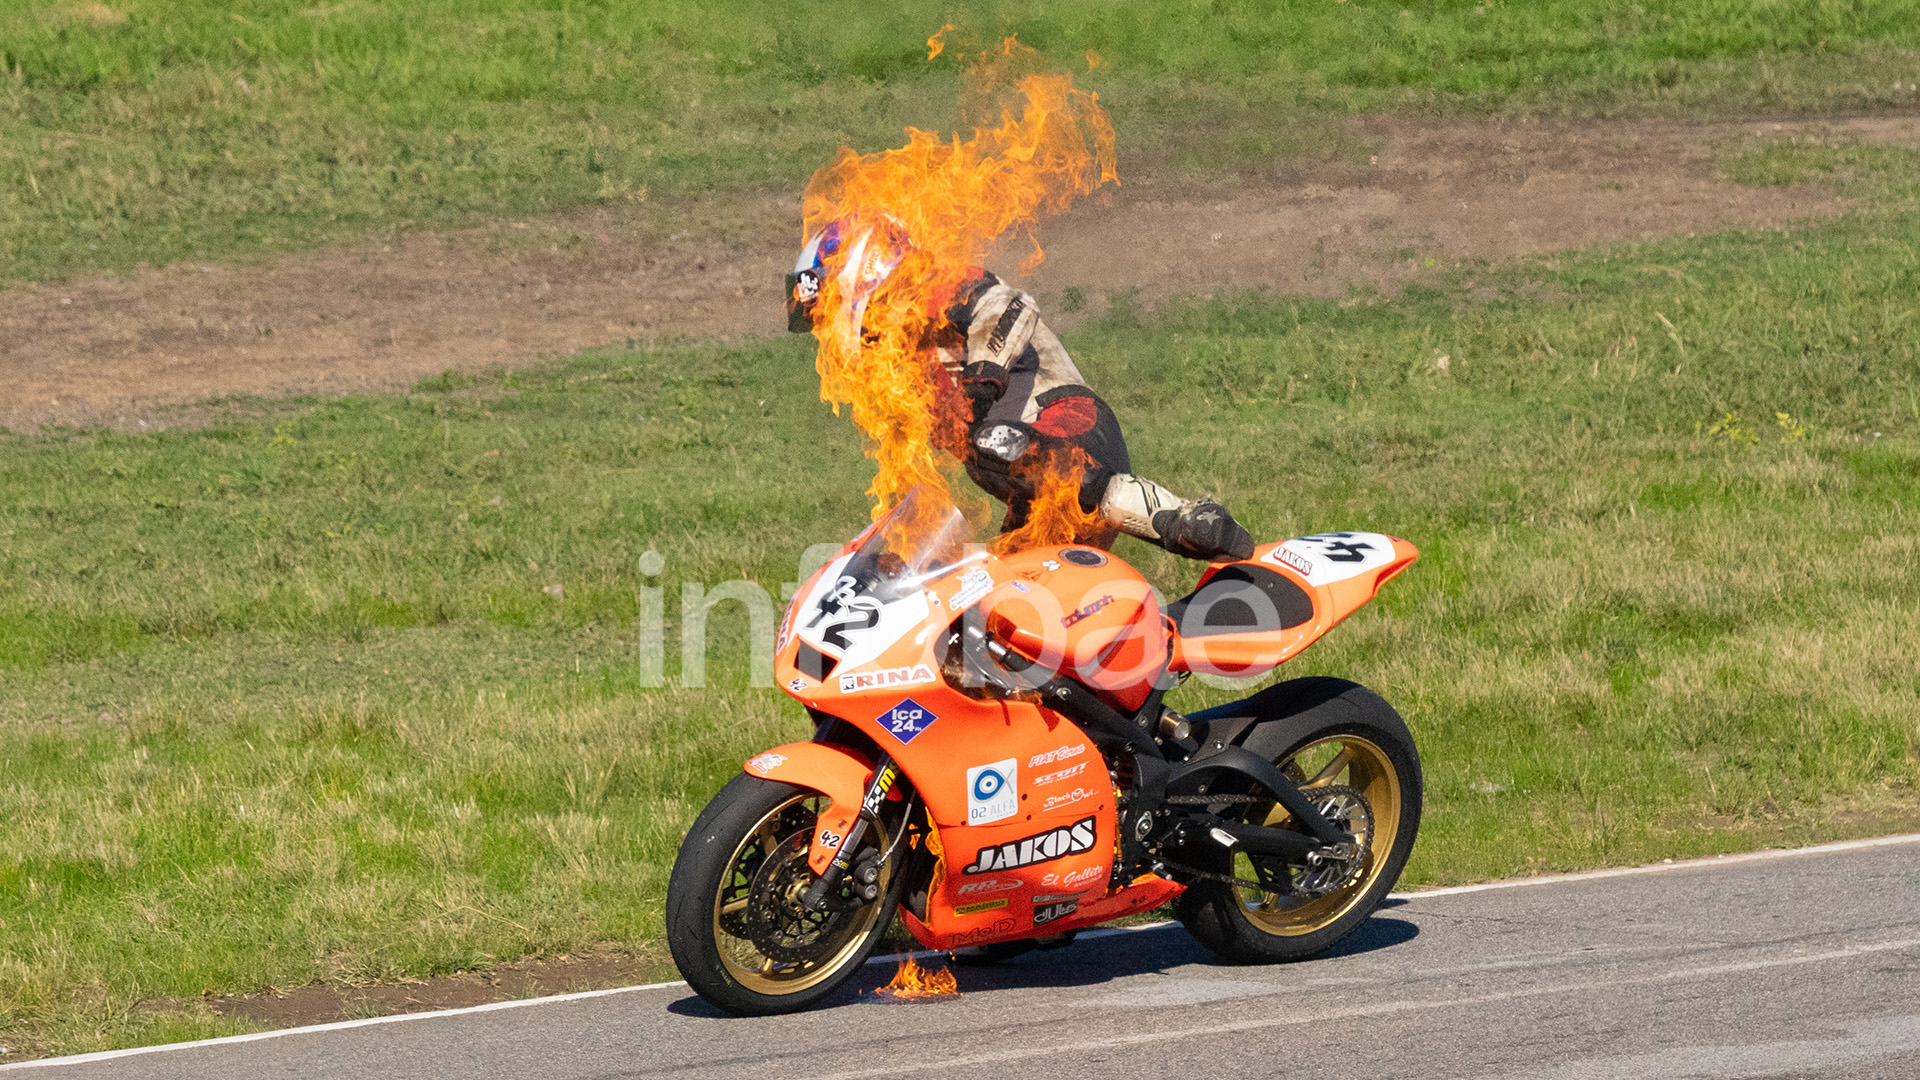 El momento más tenso: la lengua de fuego envuelve a la moto y al piloto